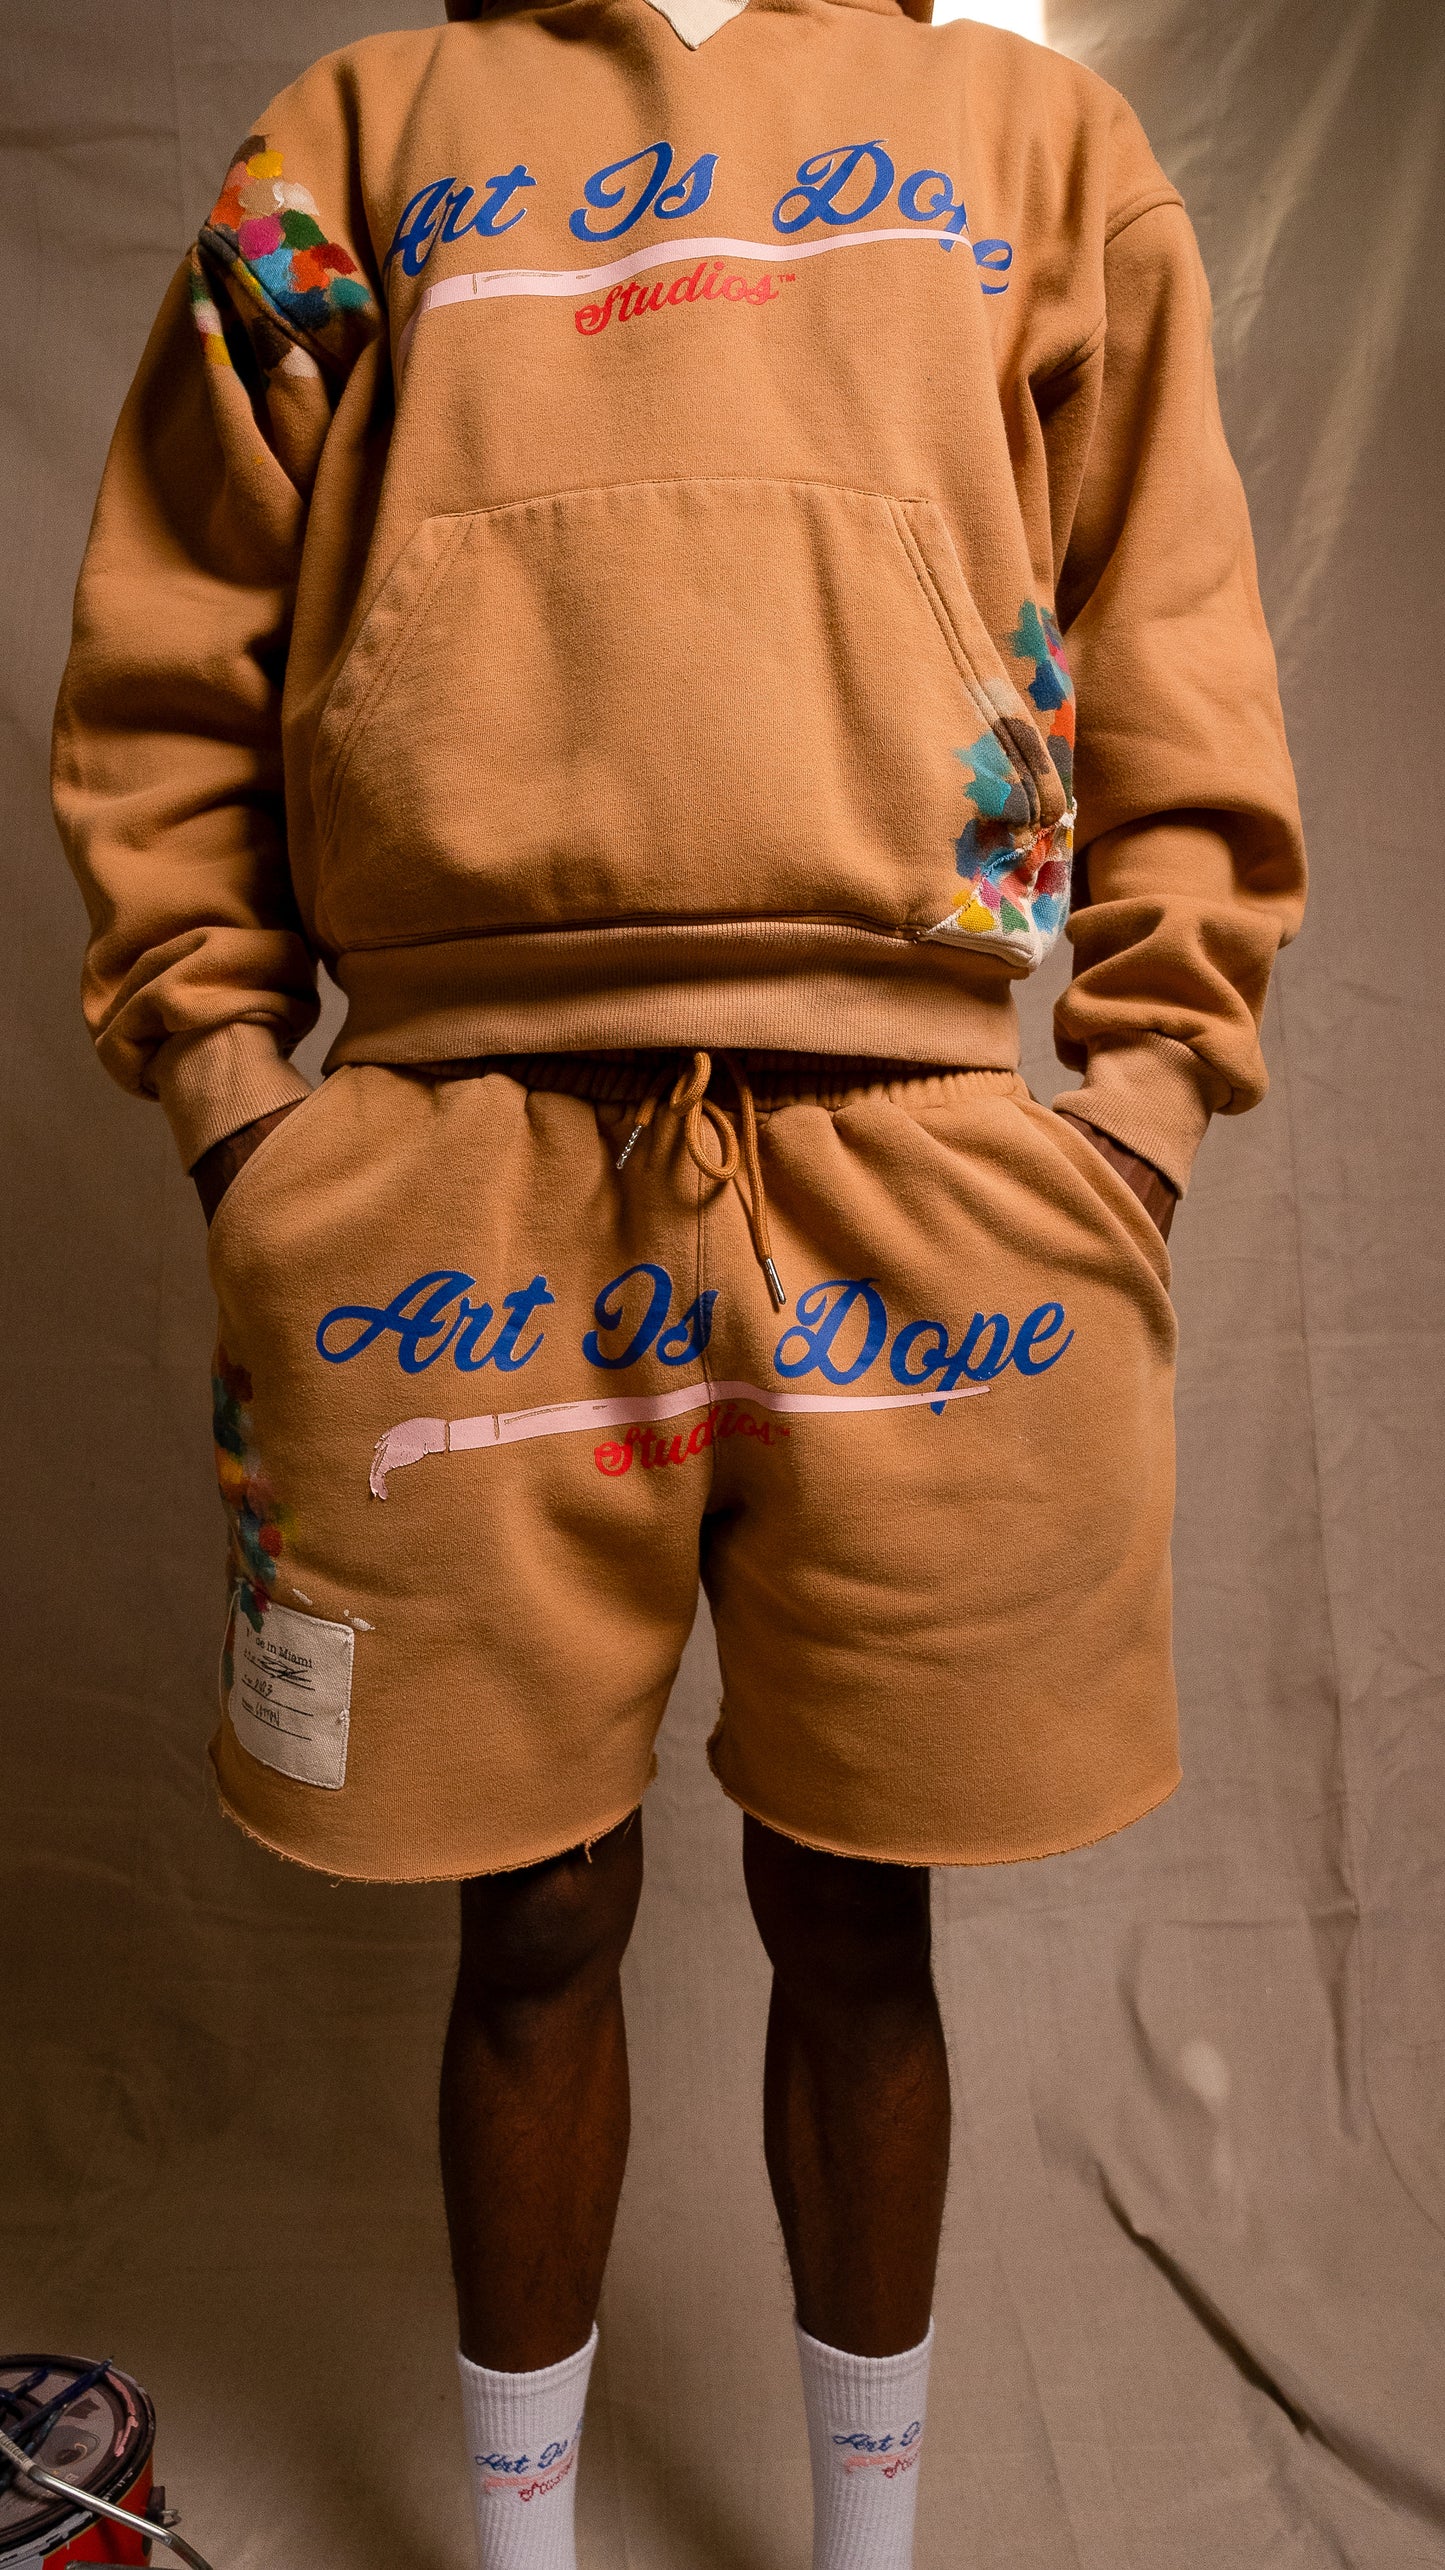 Art is dope studios hoodie